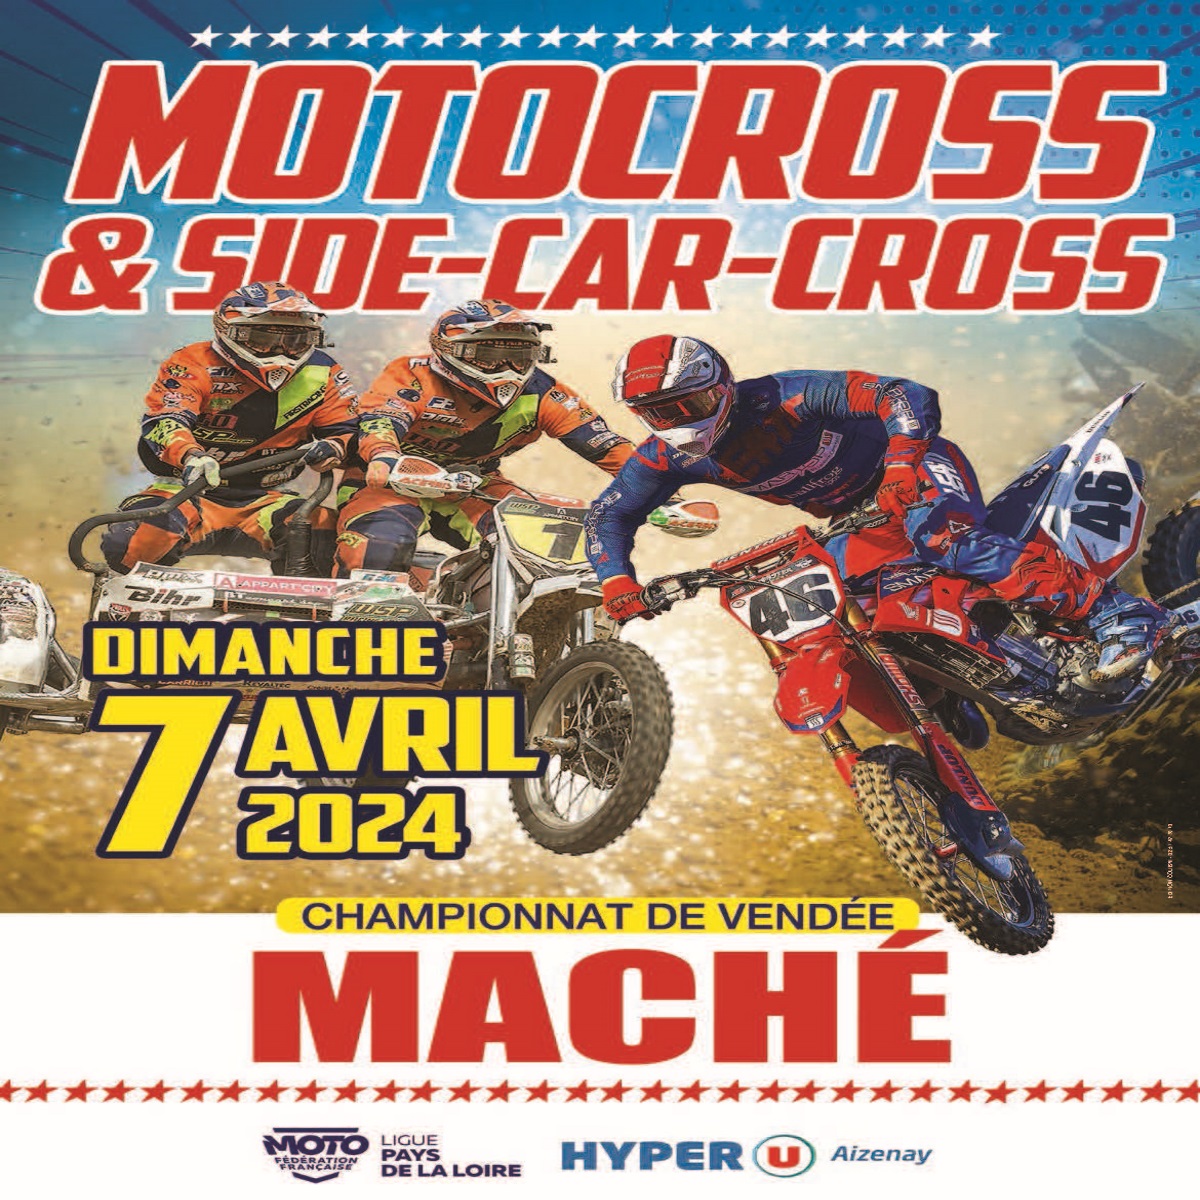 Info Motocross - Maché 7 avril